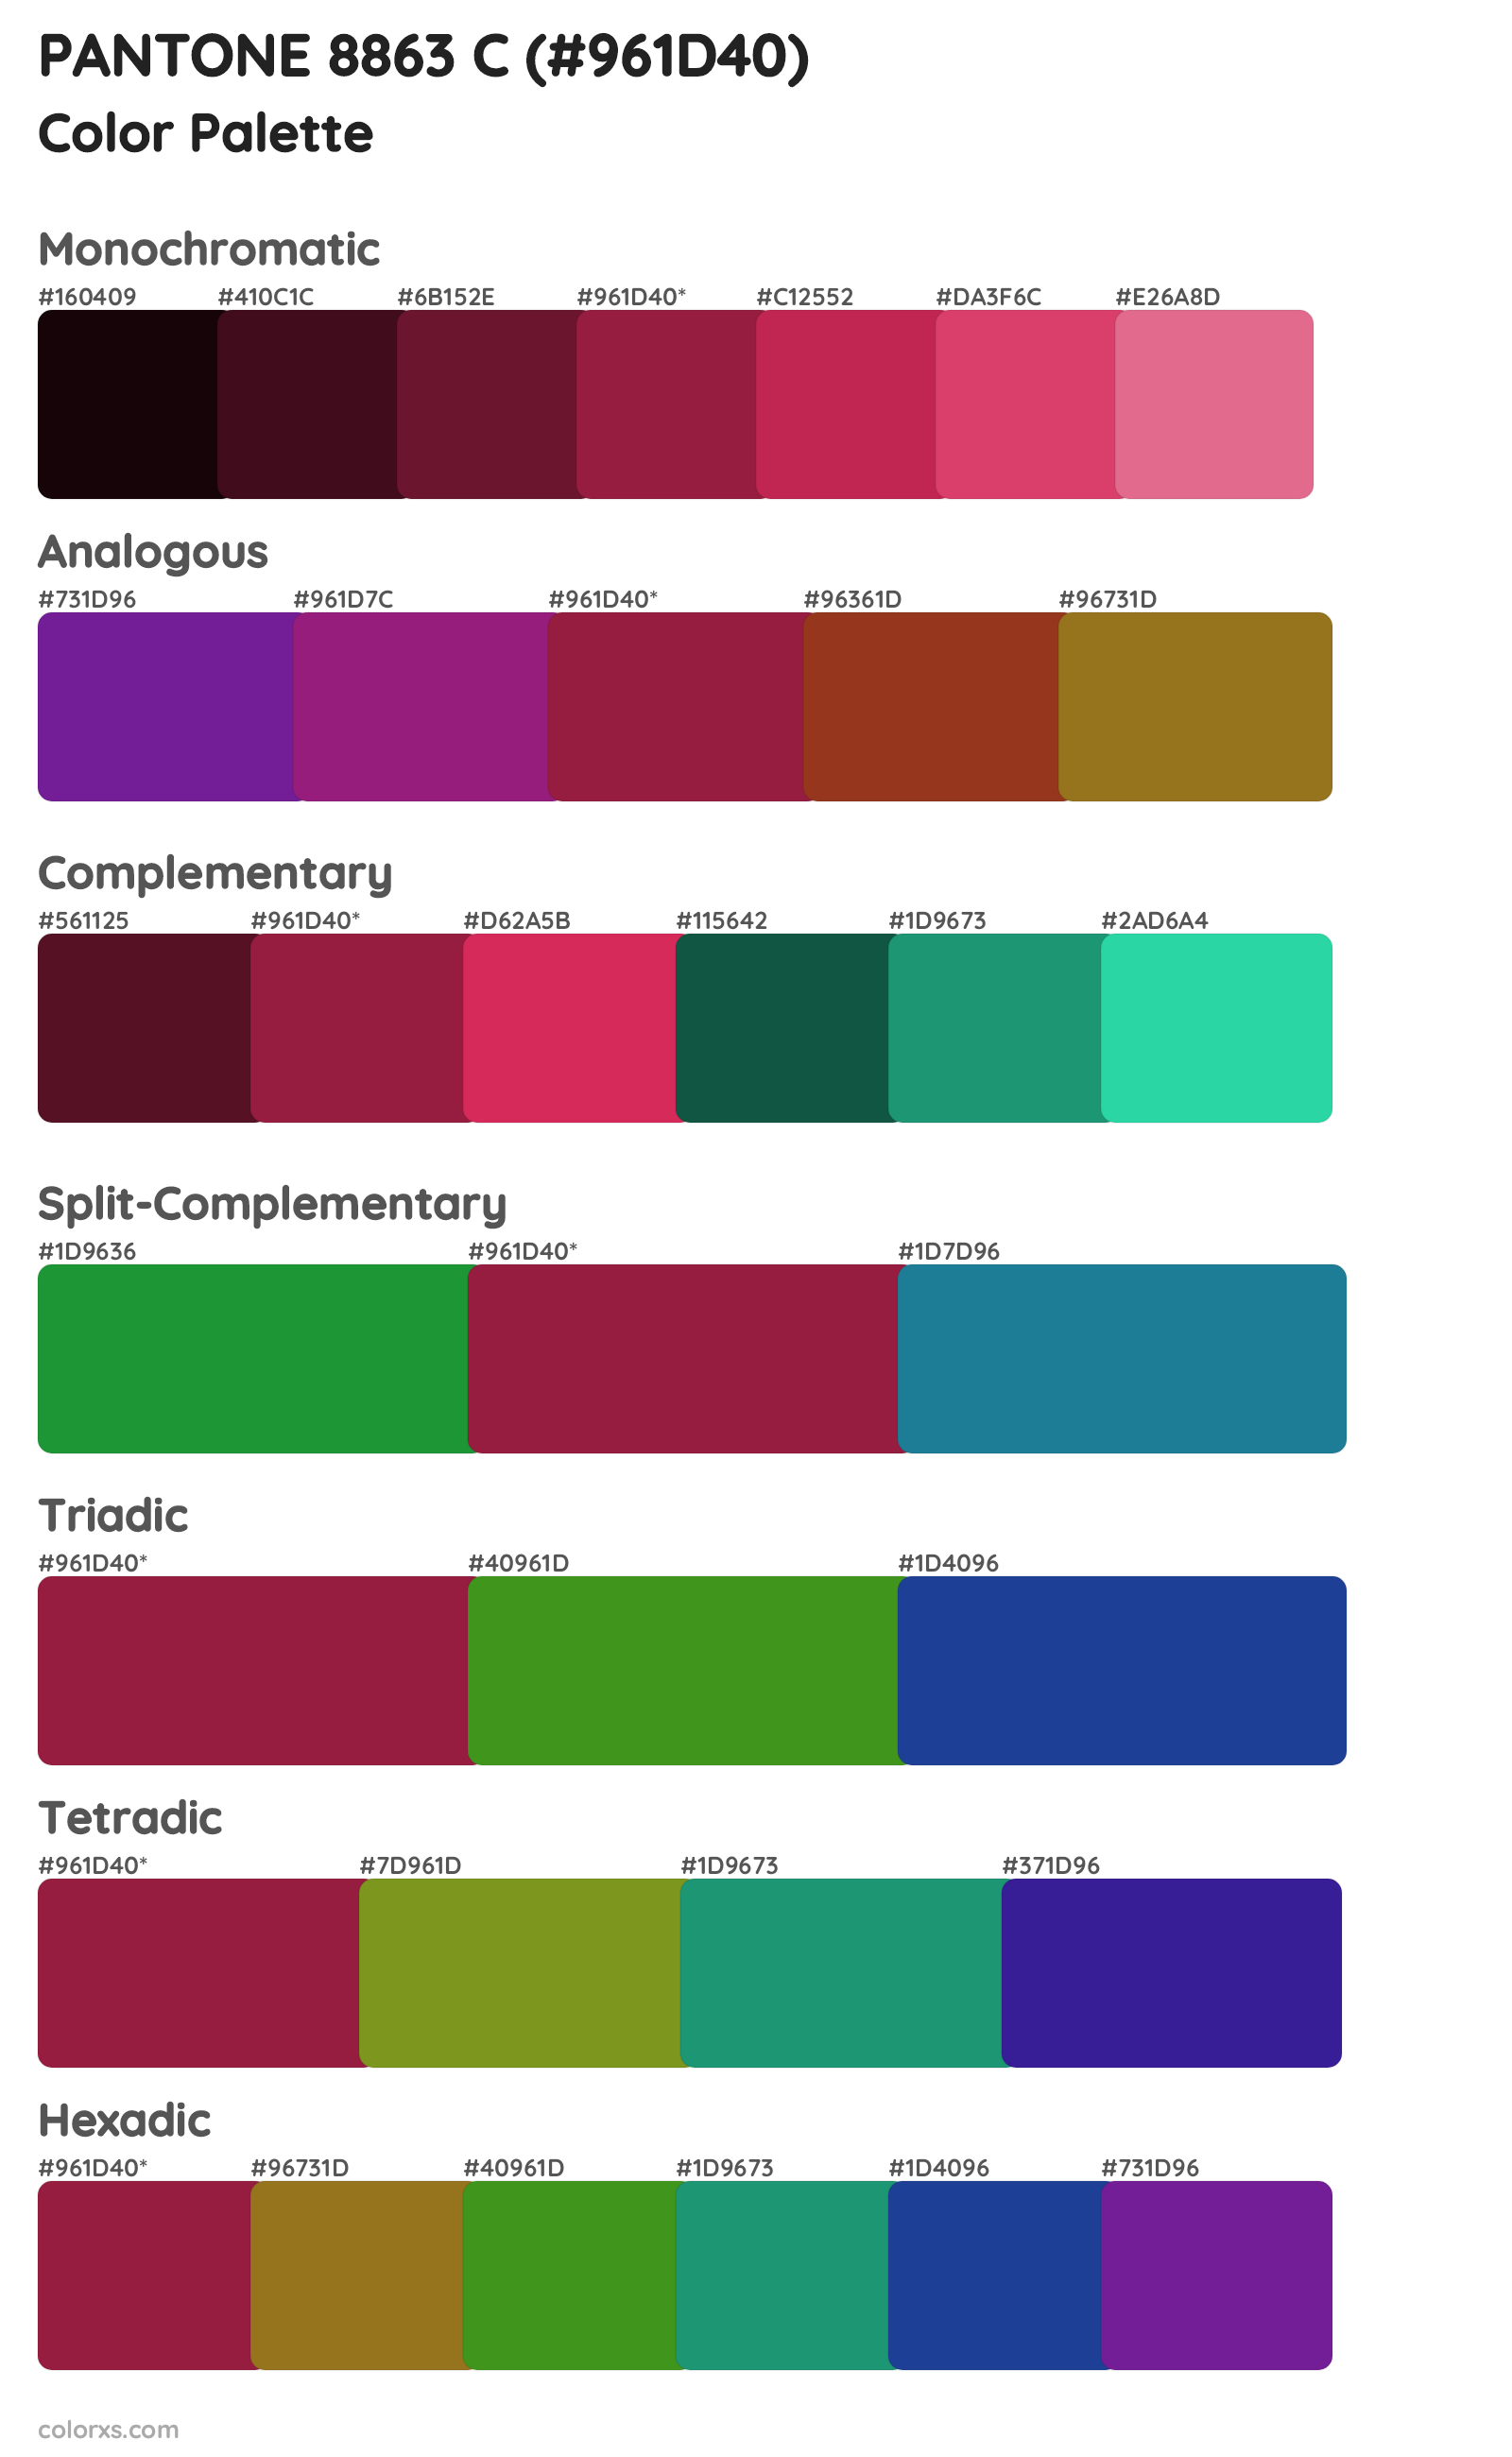 PANTONE 8863 C Color Scheme Palettes